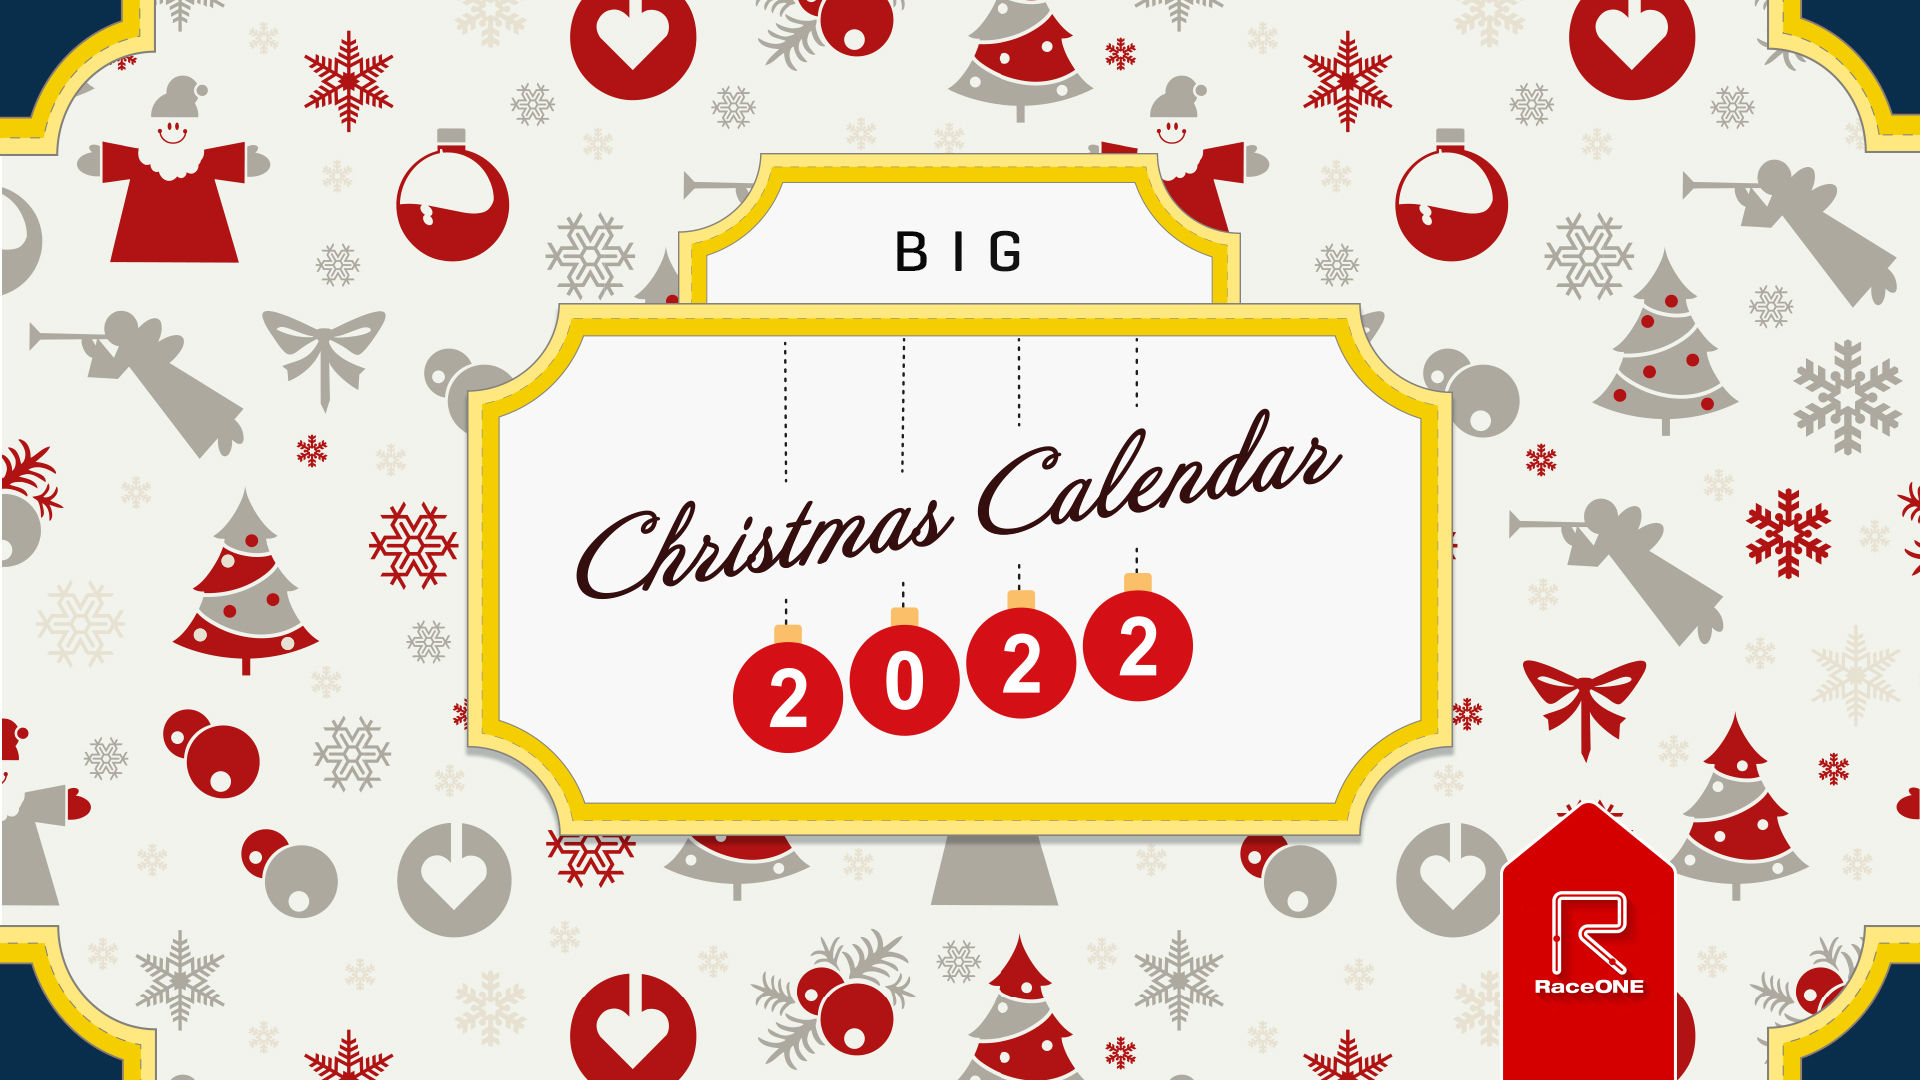 Christmas Calendar 2022 - Big #4